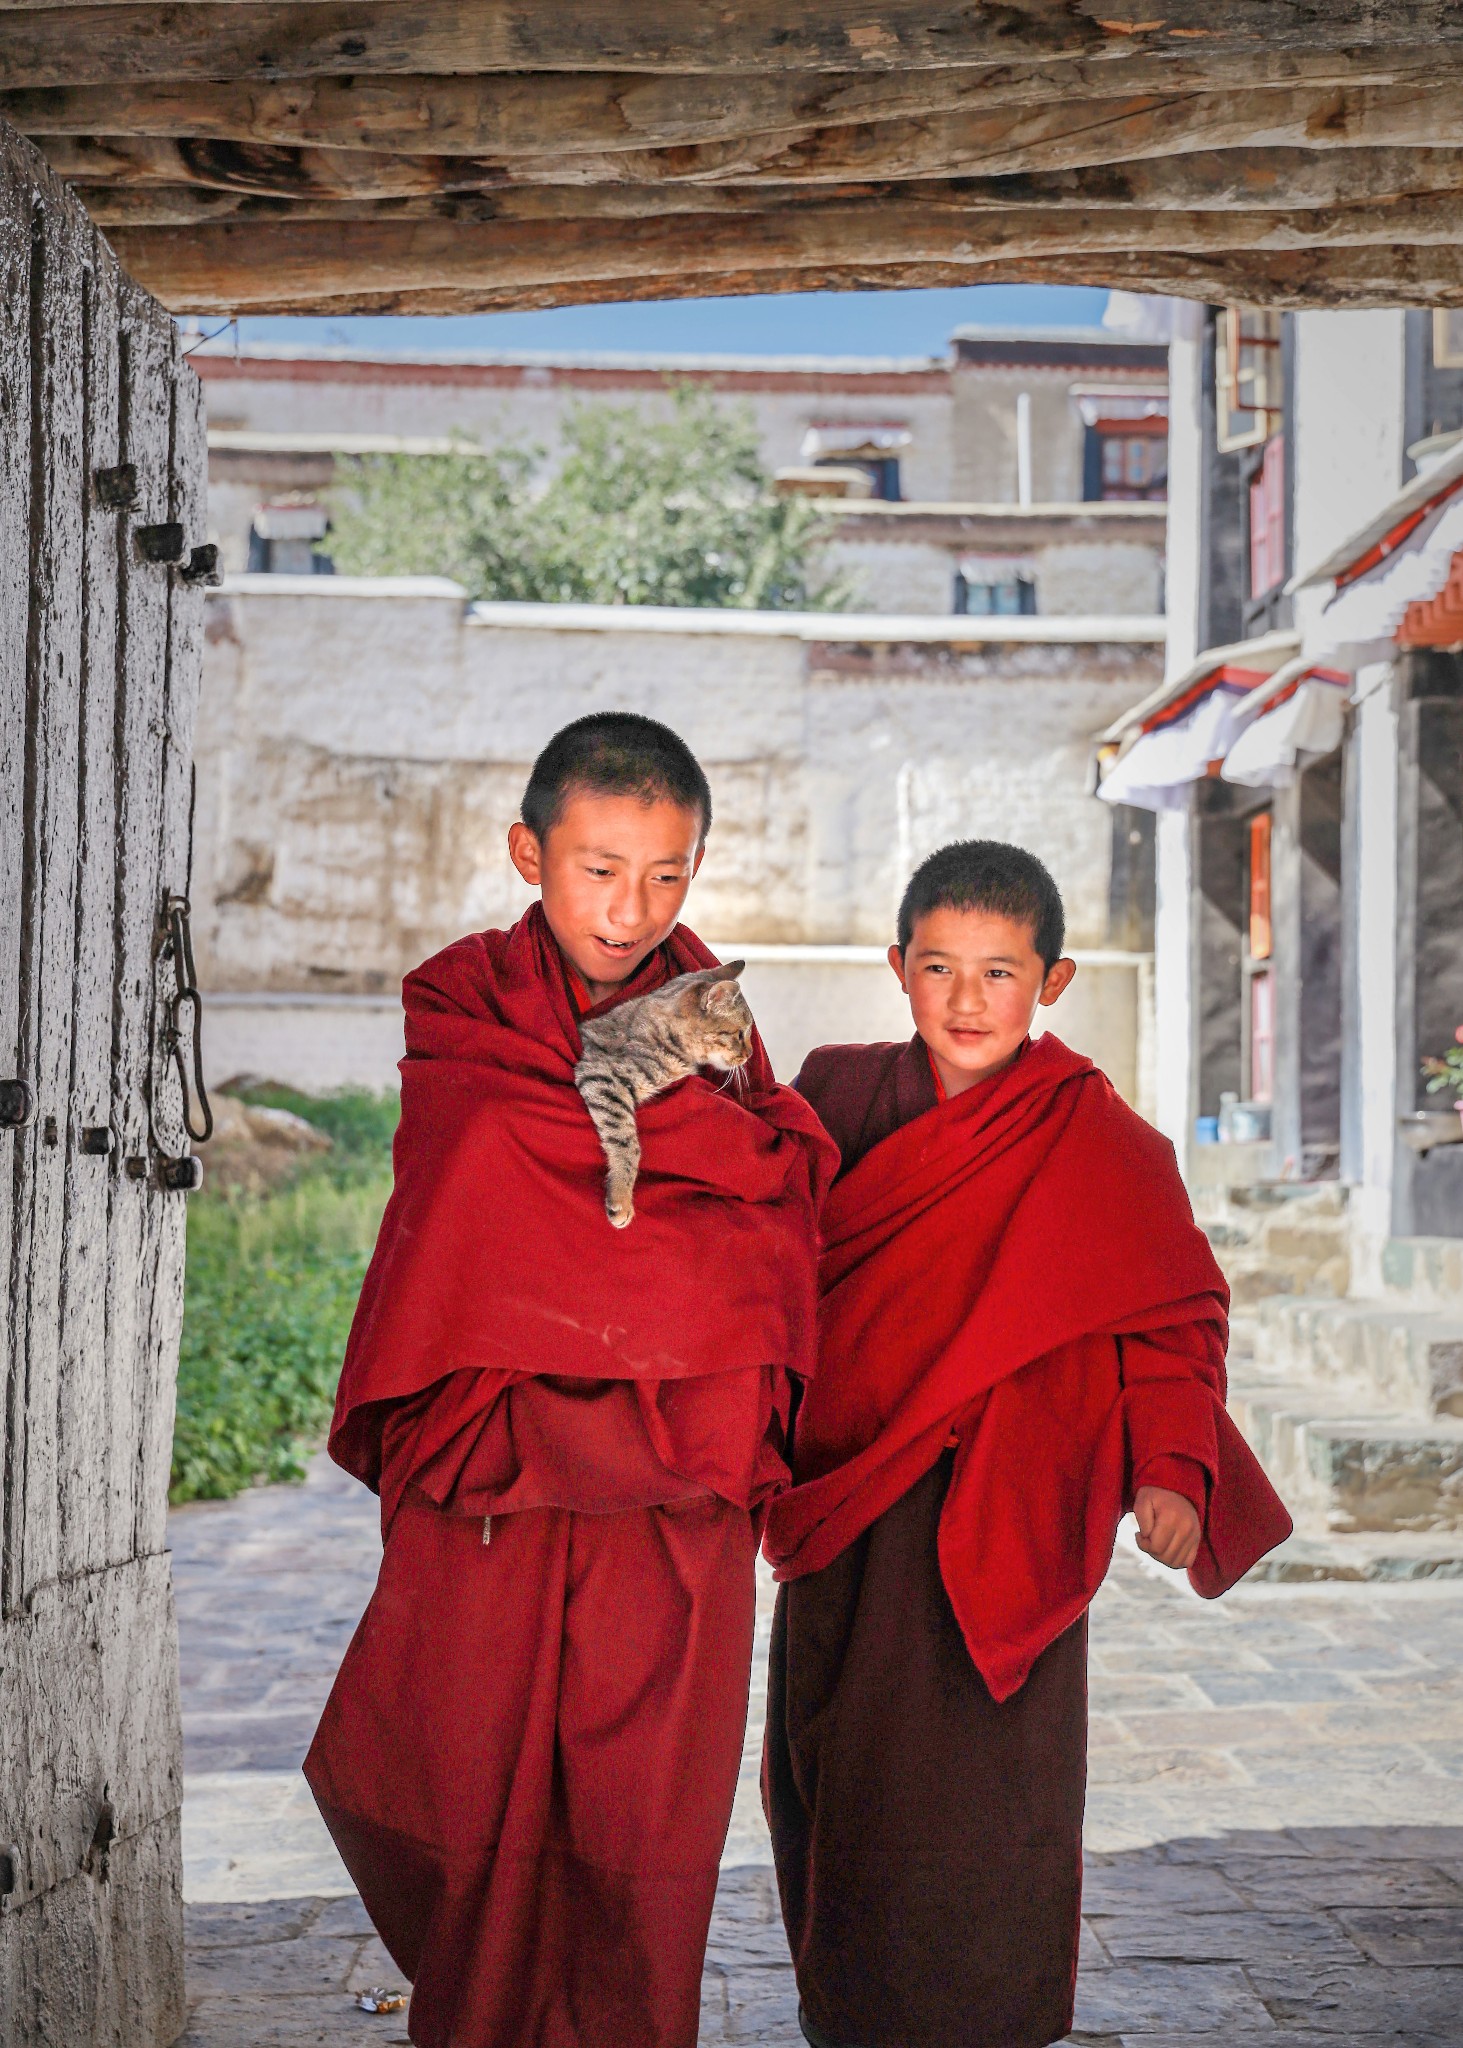 藏地自驾游，干脆利落的辞职，踏上了西藏之旅-我的毕业旅行